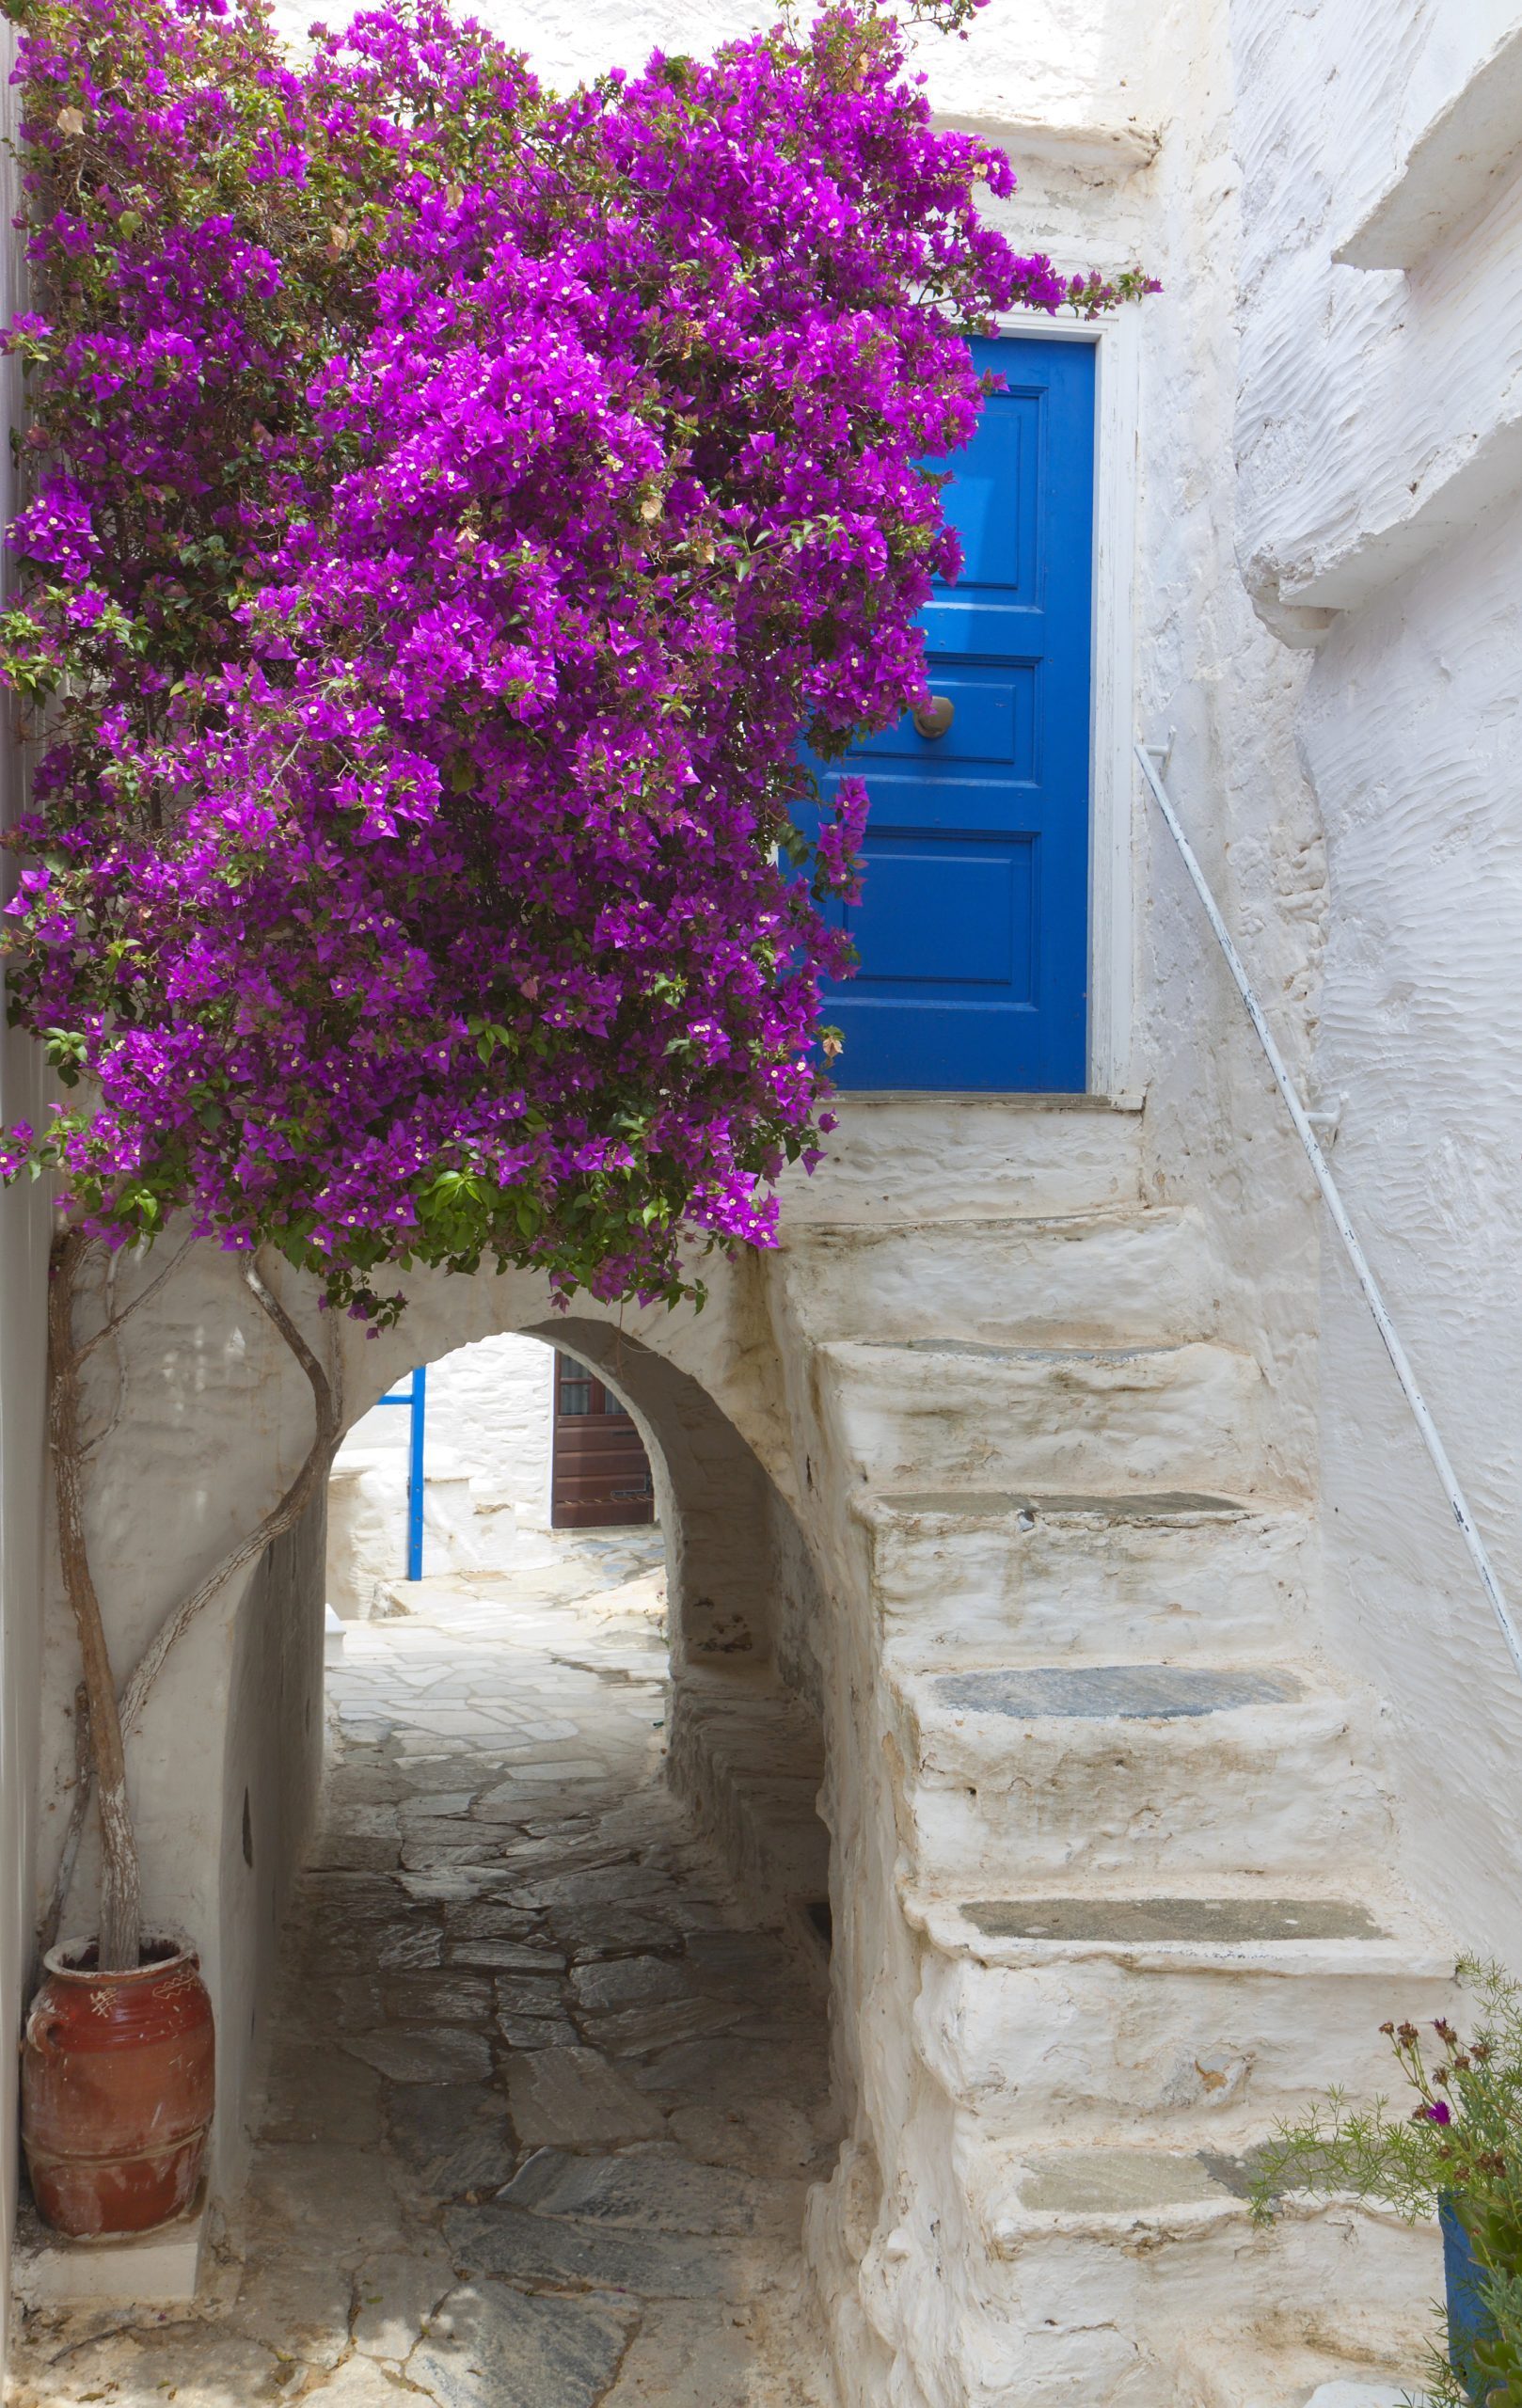 Naxos island in Greece